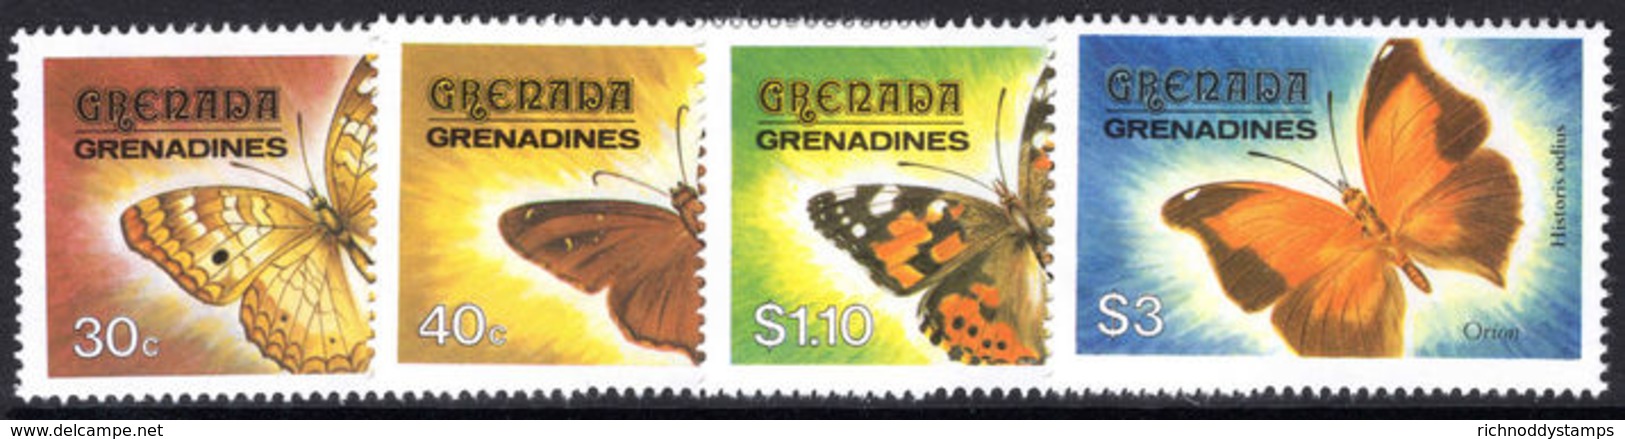 Grenada Grenadines 1982 Butterflies Unmounted Mint. - Grenada (1974-...)